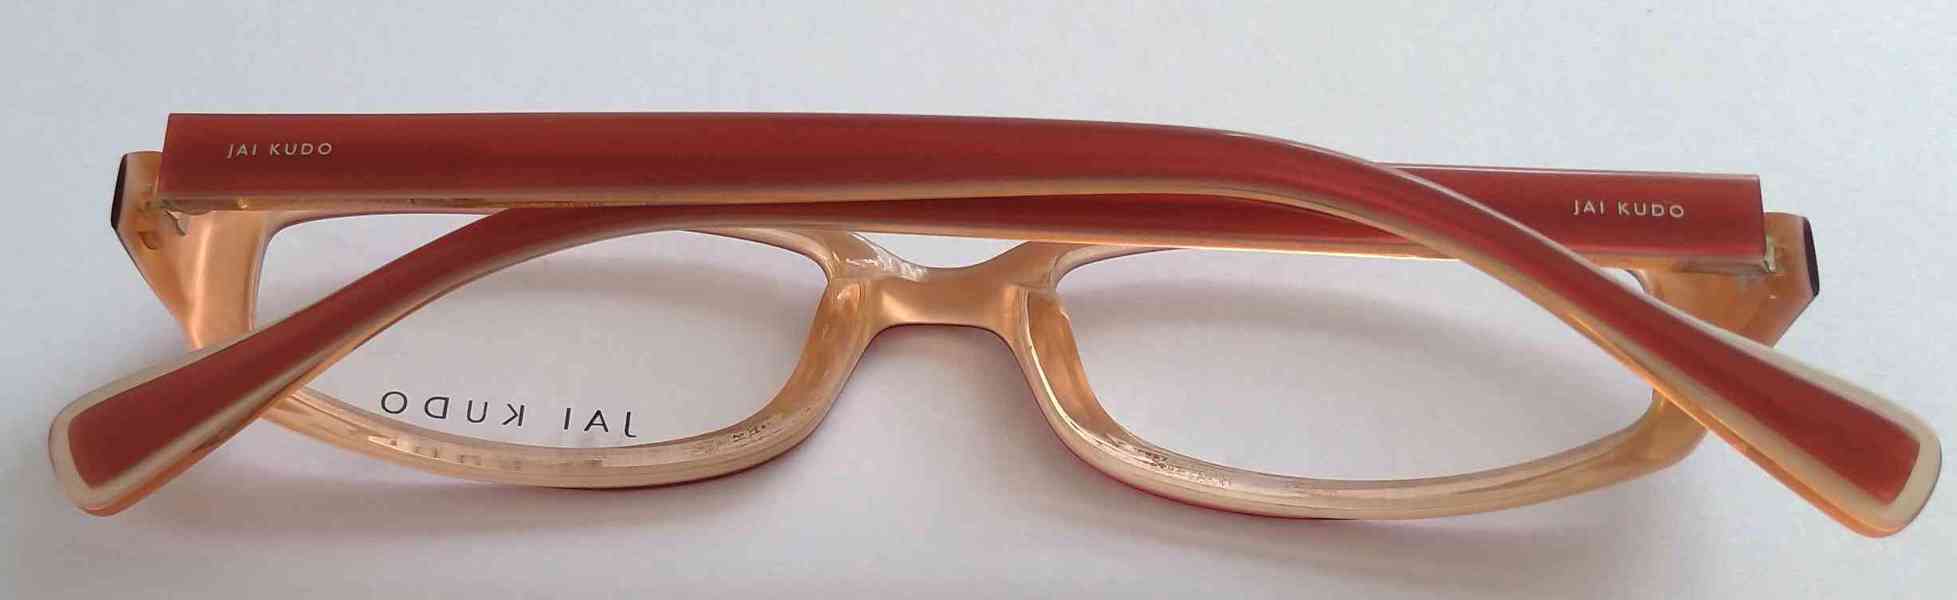 JAI KUDO 1717 P09 dámské brýlové obruby 50-18-135 MOC:2600Kč - foto 9